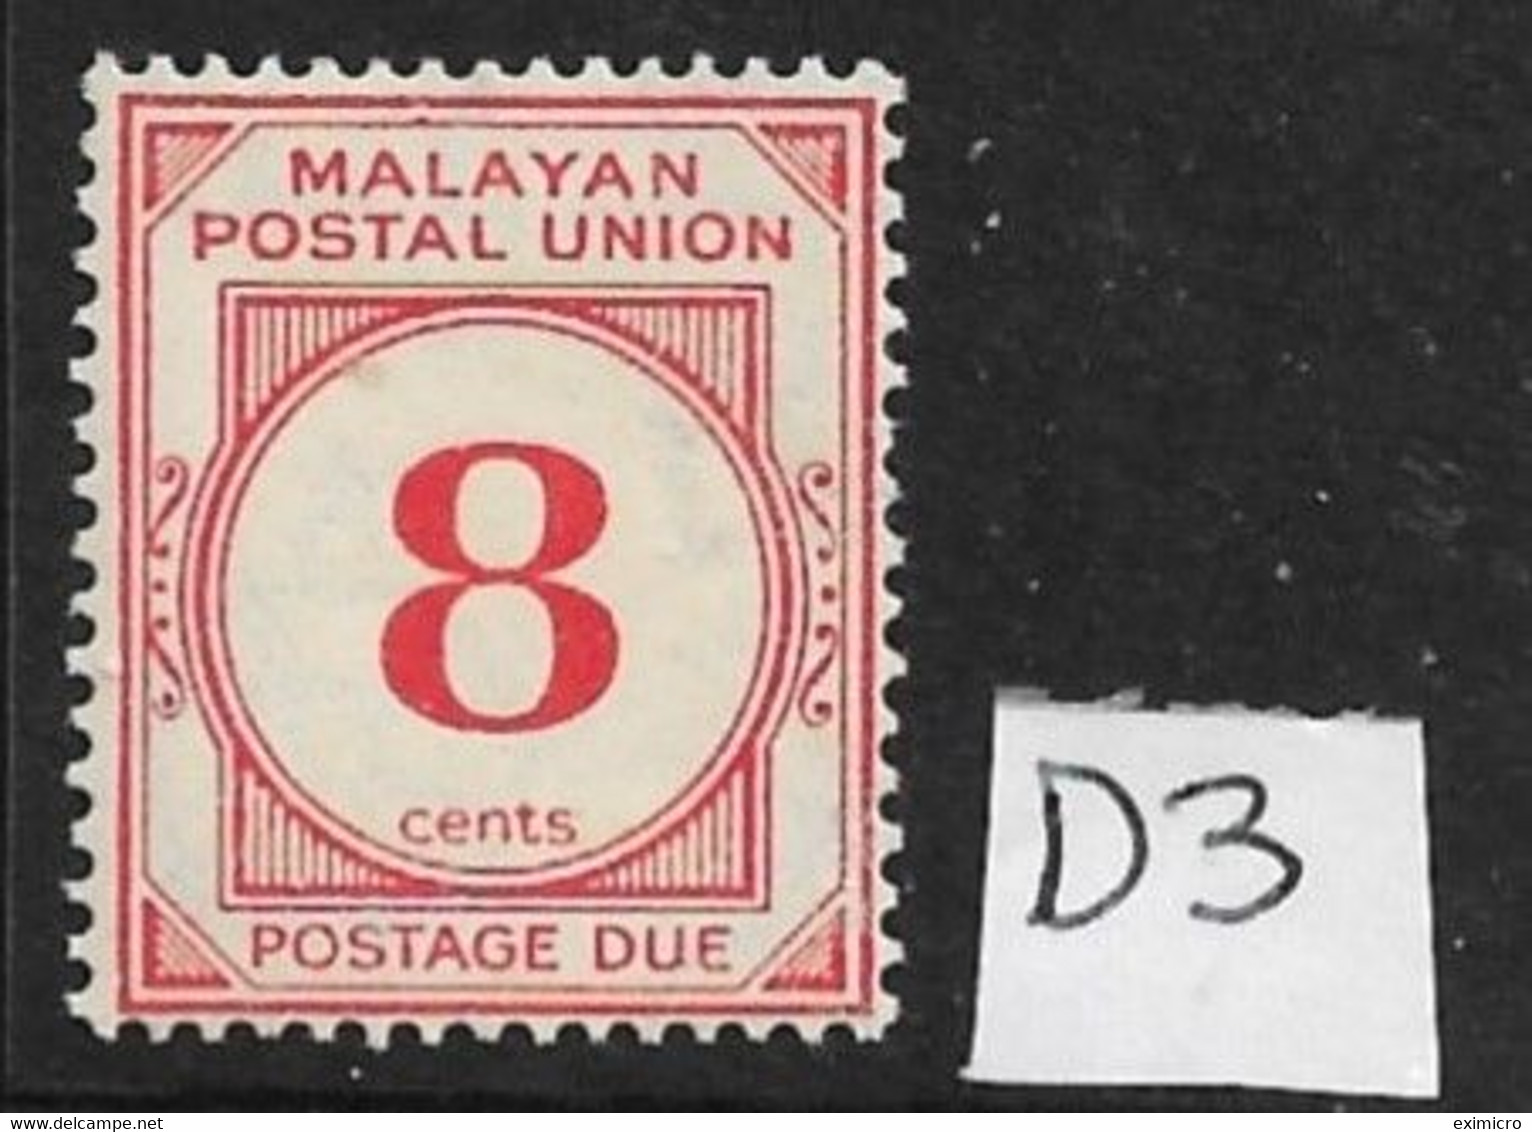 MALAYA - MALAYAN POSTAL UNION 1936 8c POSTAGE DUE SG D3 LIGHTLY MOUNTED MINT Cat £24 - Malayan Postal Union